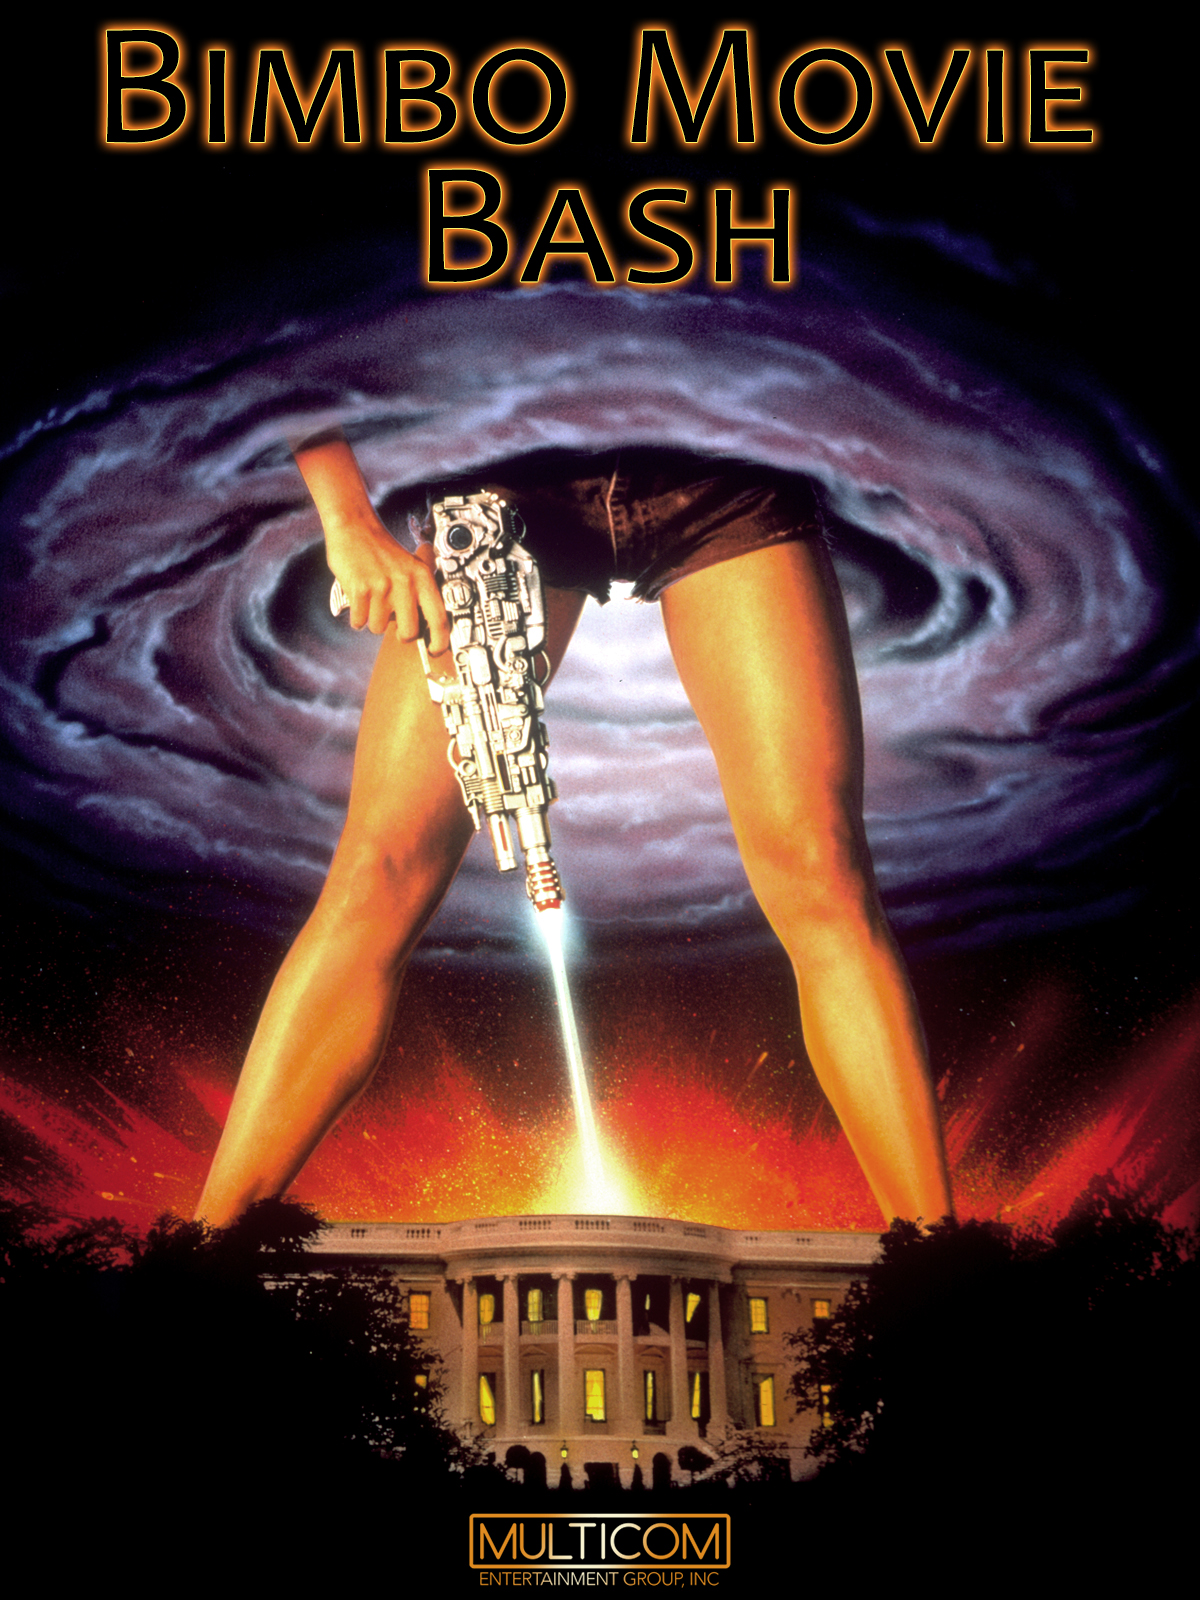 Bimbo Movie Bash (1997) Screenshot 1 